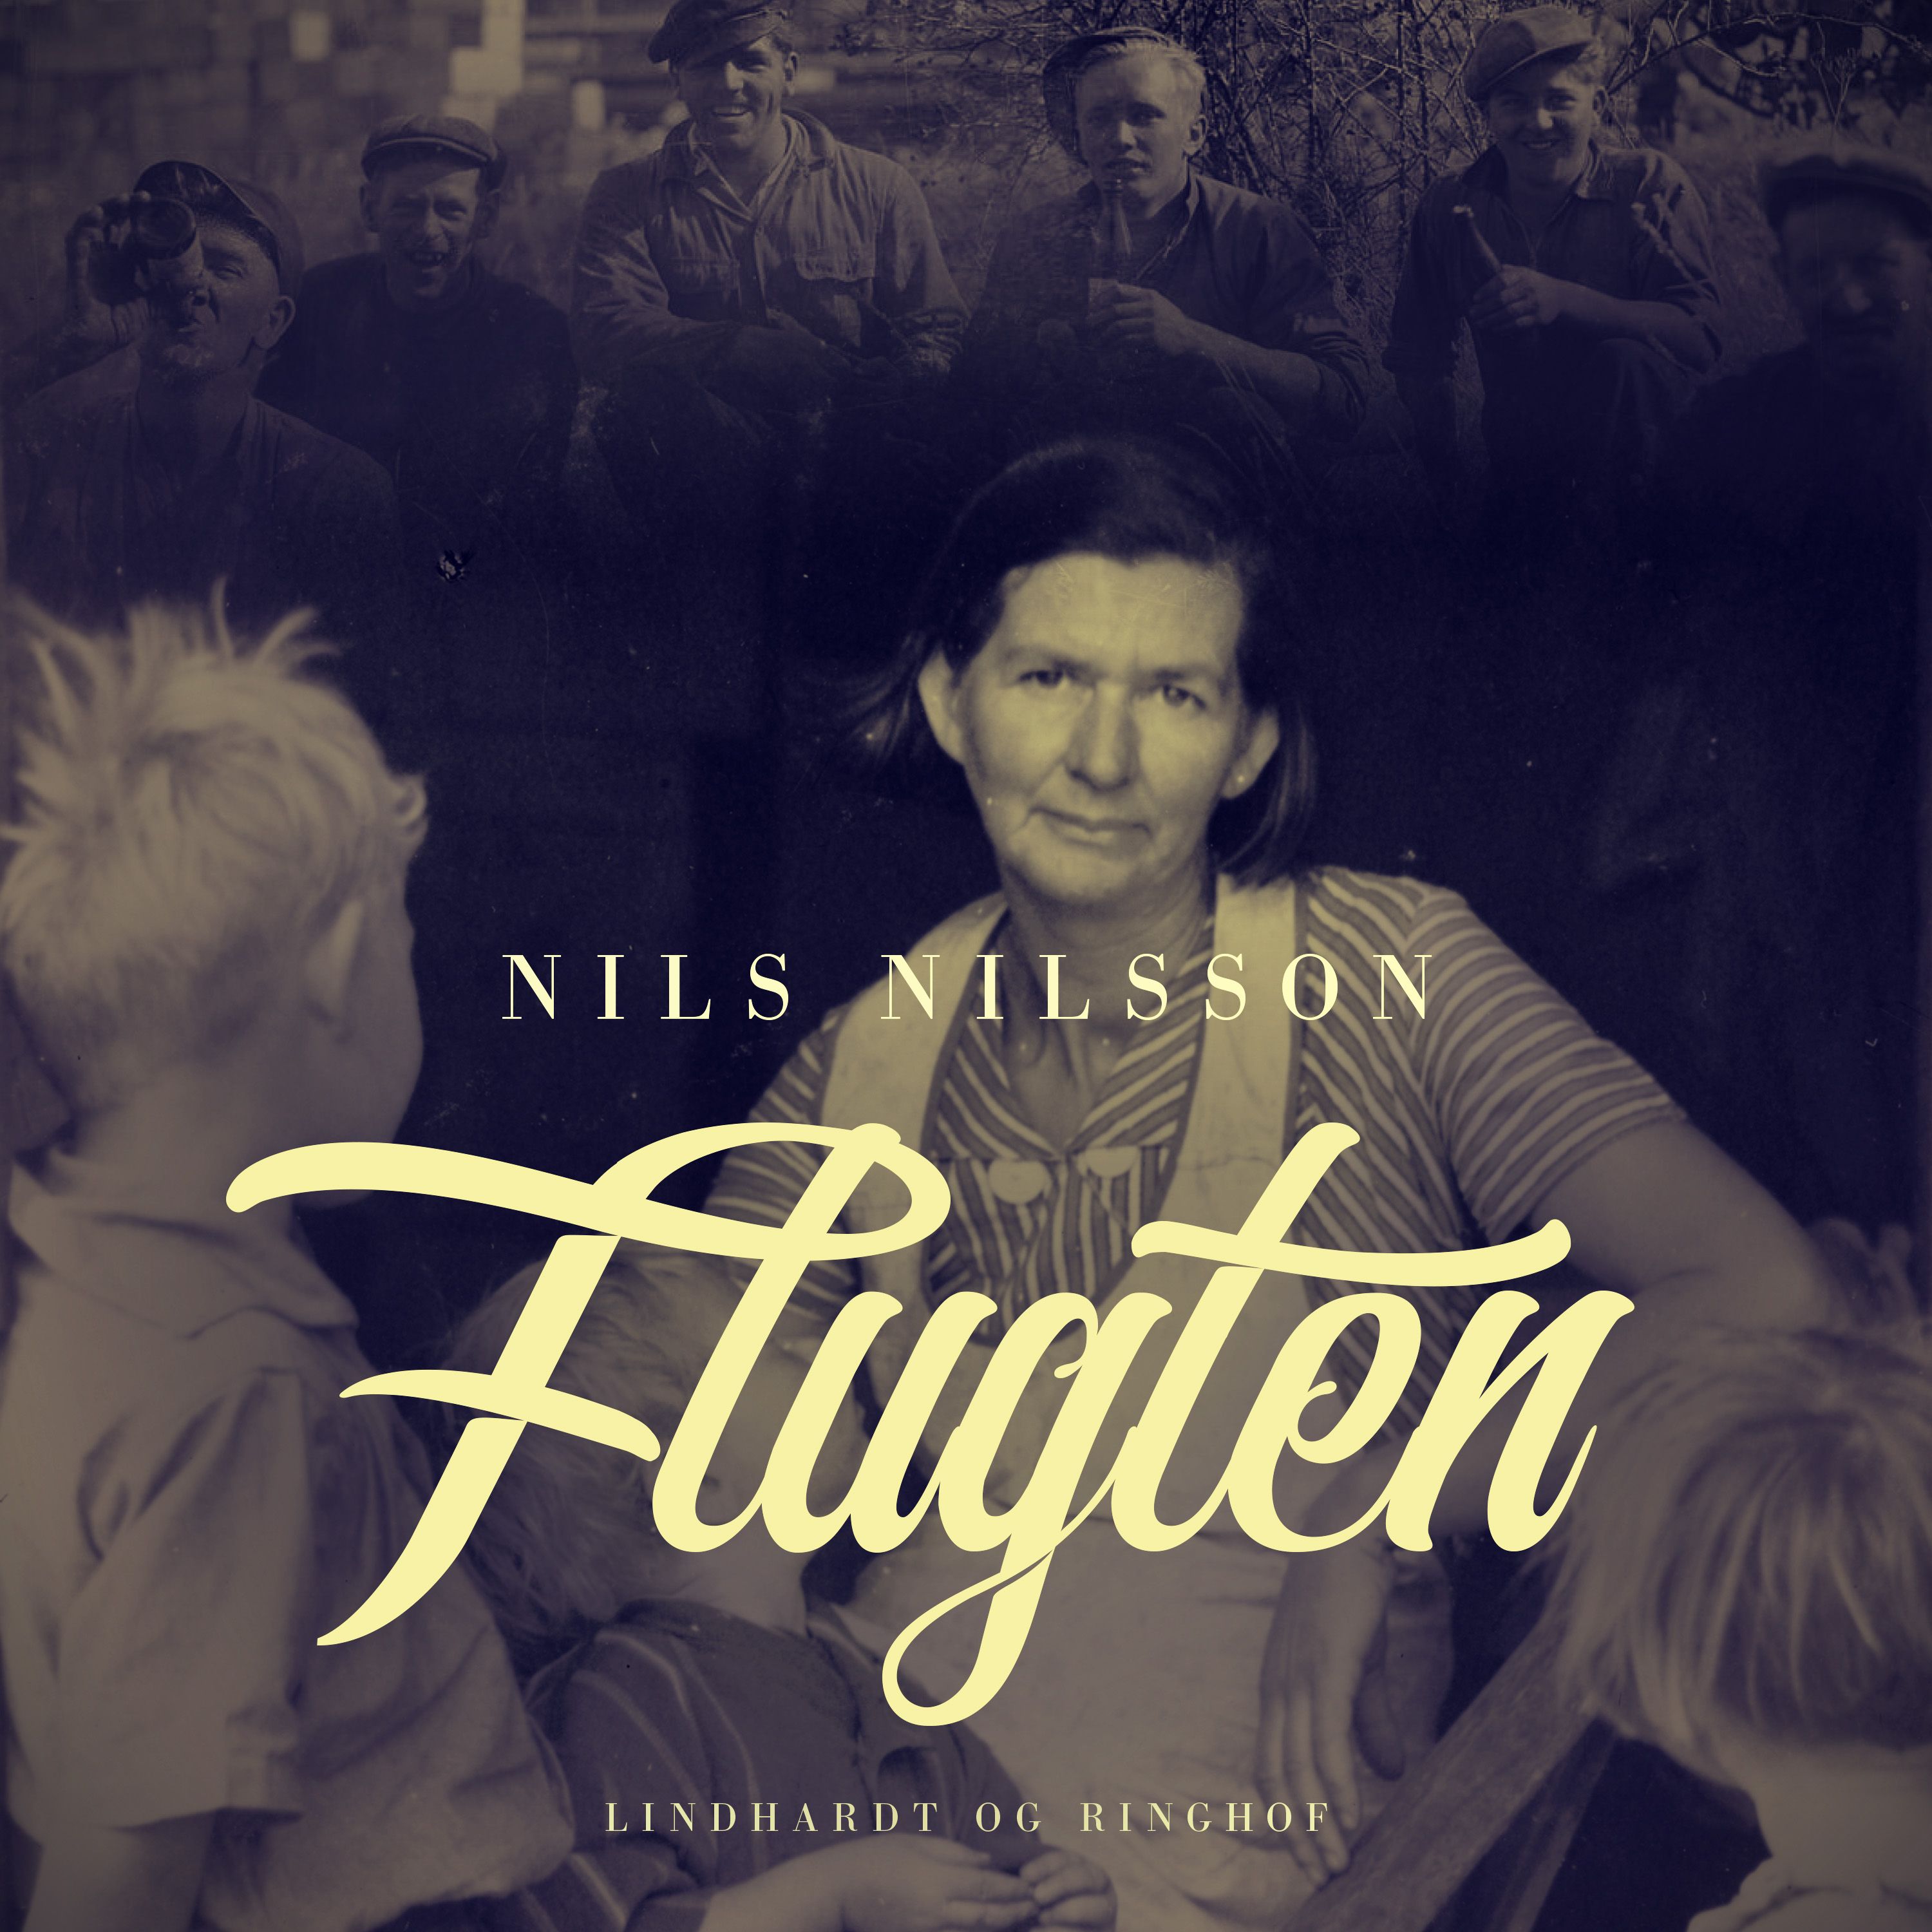 Flugten, ljudbok av Nils Nilsson